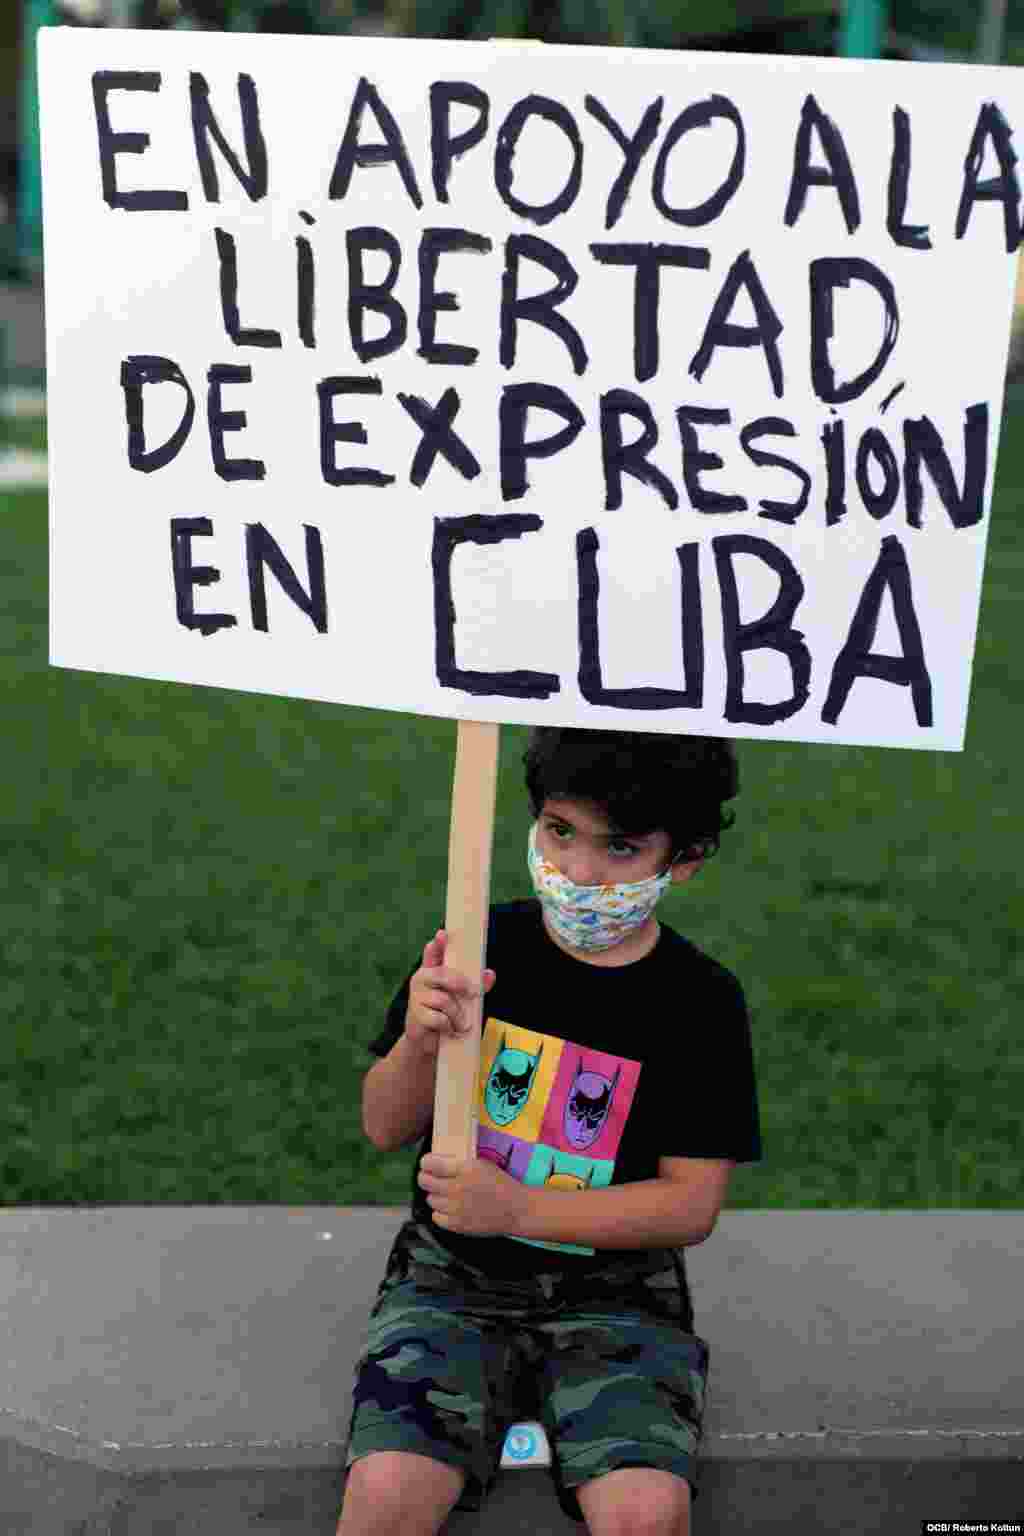 El exilio brinda apoyo al Movimiento San Isidro en la ciudad de Miami. En la imagen el pequeño Sebastian Borrego sostiene un gran cartel en apoyo a la disidencia cubana. Foto Roberto Koltun OCB Staff.